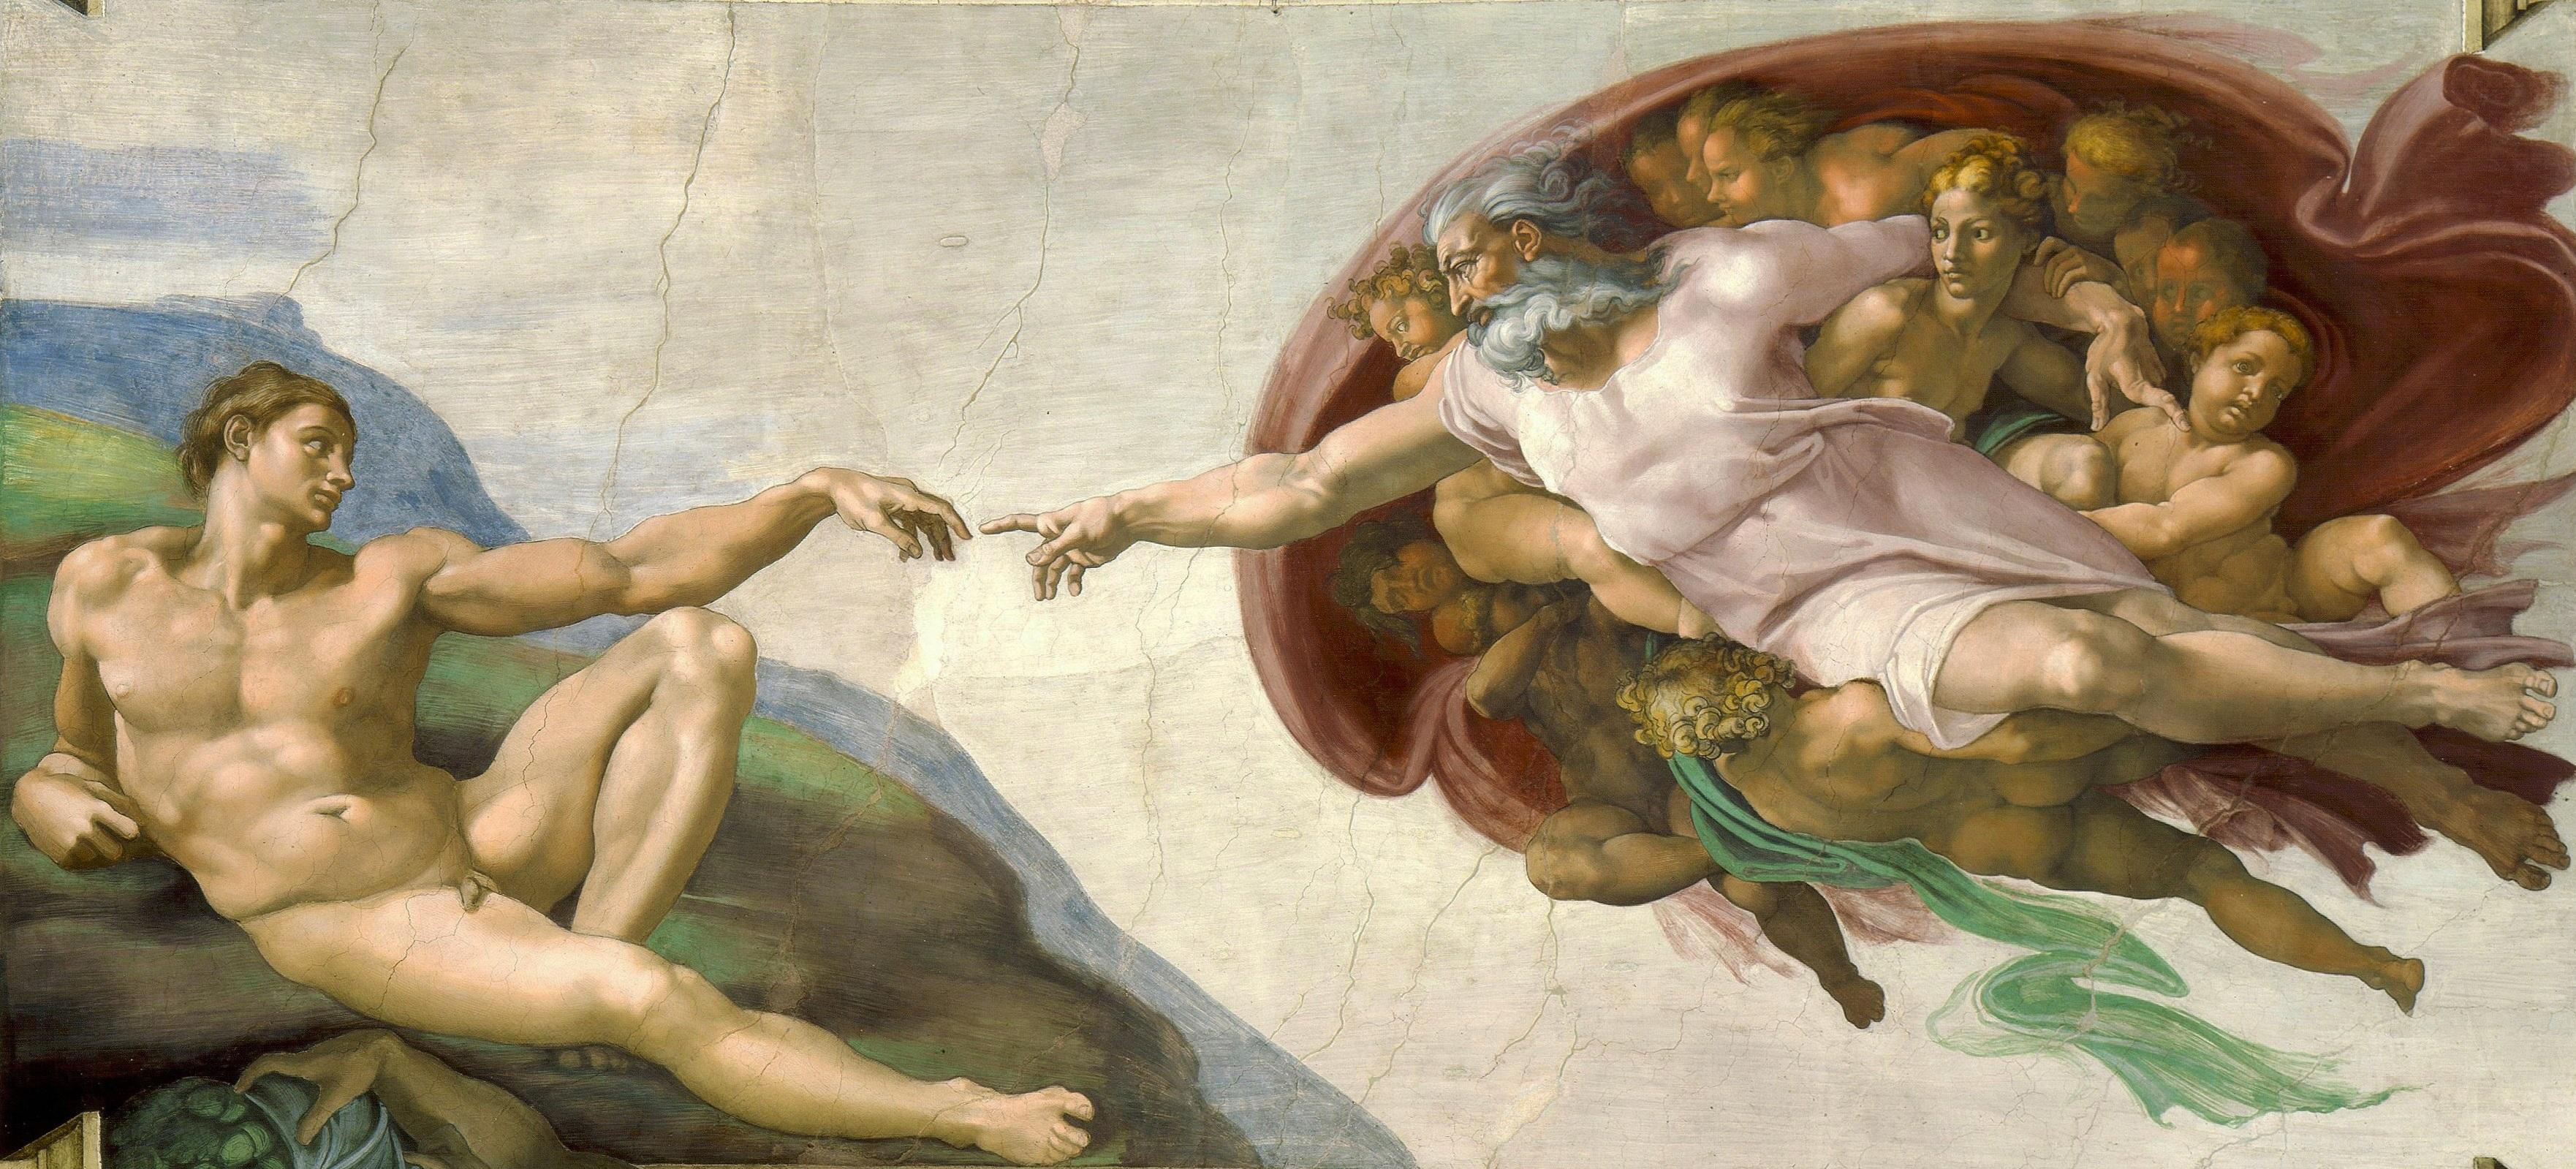 Historiskt har andning stått som en symbol för livet. I den kristna kulturen blåser Gud in livets ande genom människans näsborrar. Målning av Michelangelo Buonarroti (1475– 1564). Foto: Public Domain